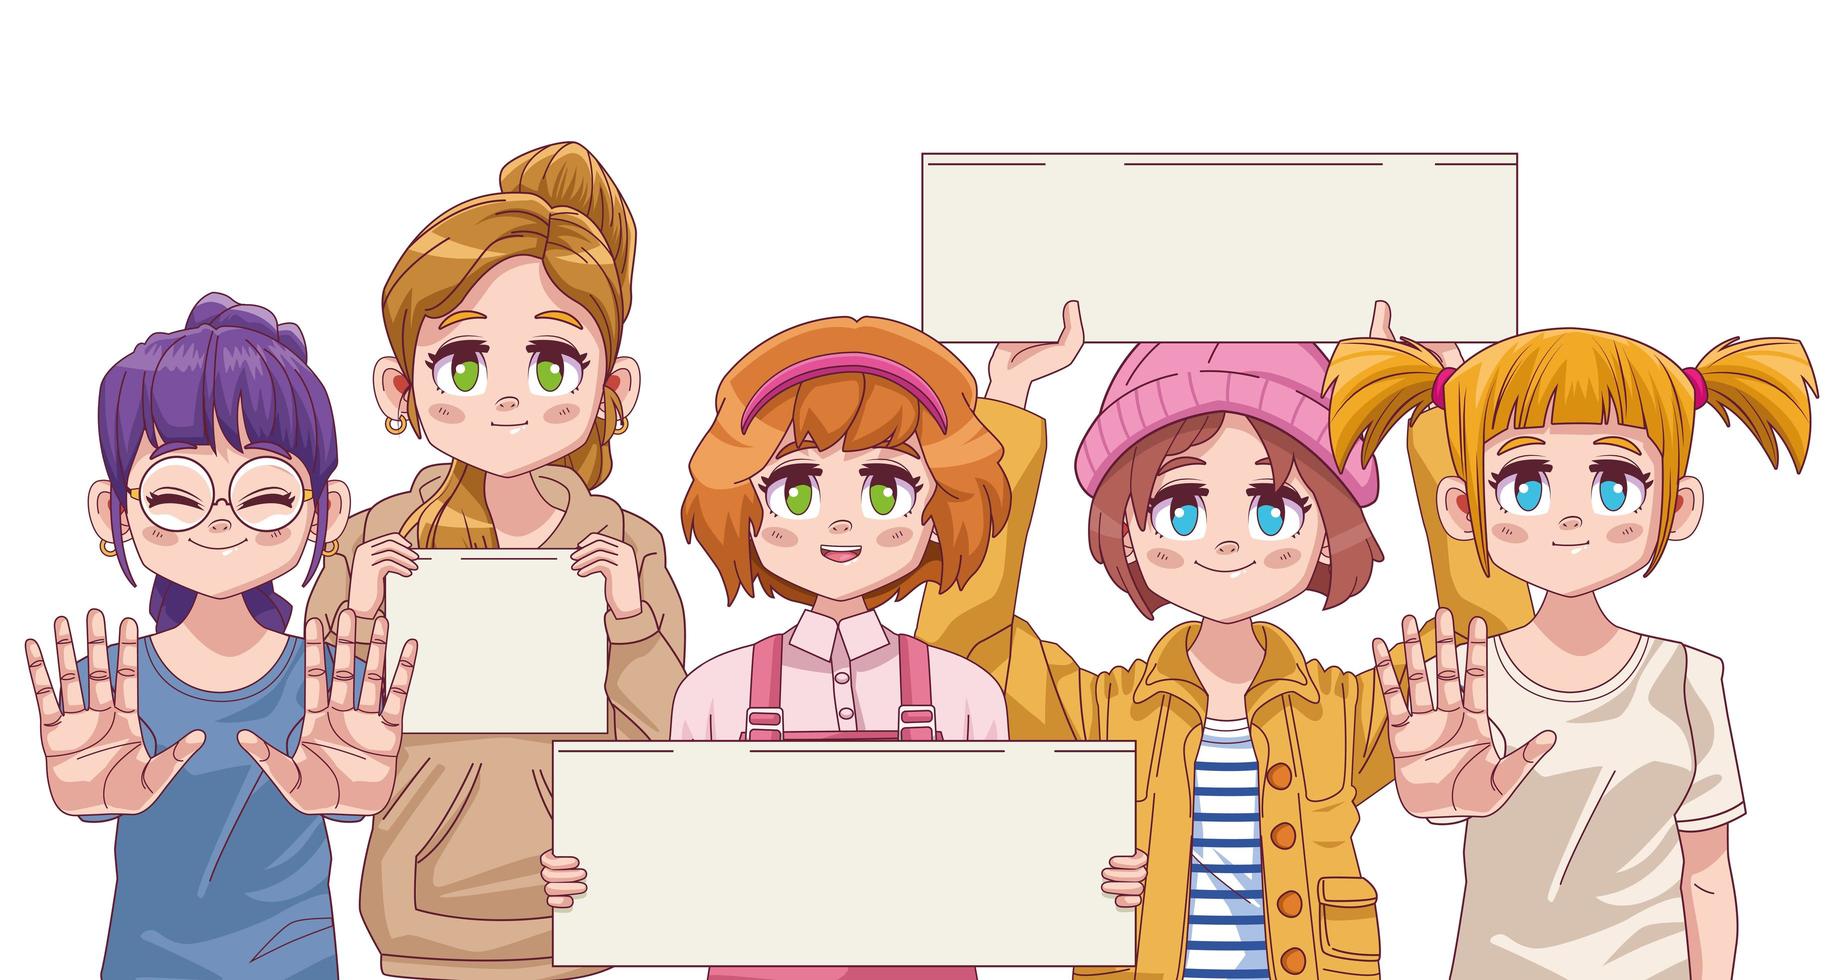 grupo de chicas lindas manga anime con pancartas de protesta vector